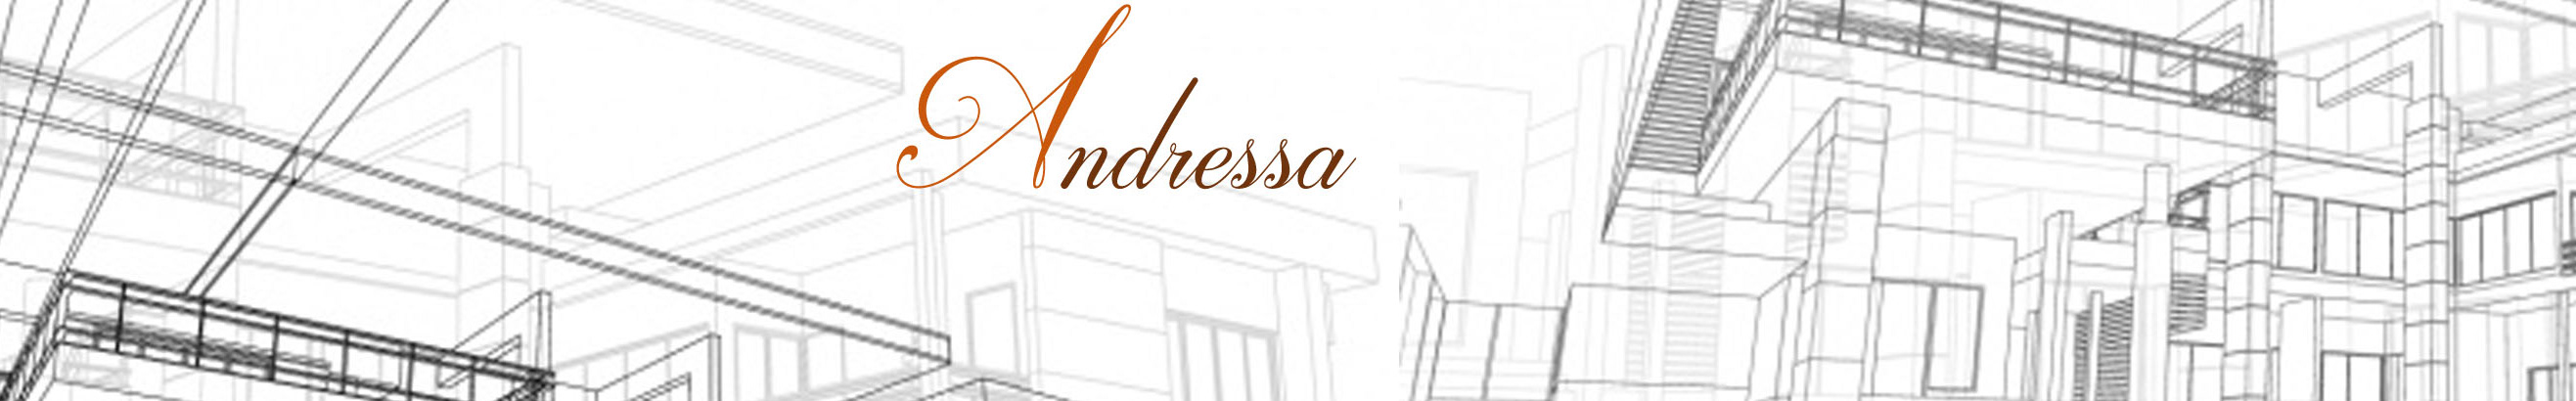 Andressa Jesus Silva's profile banner